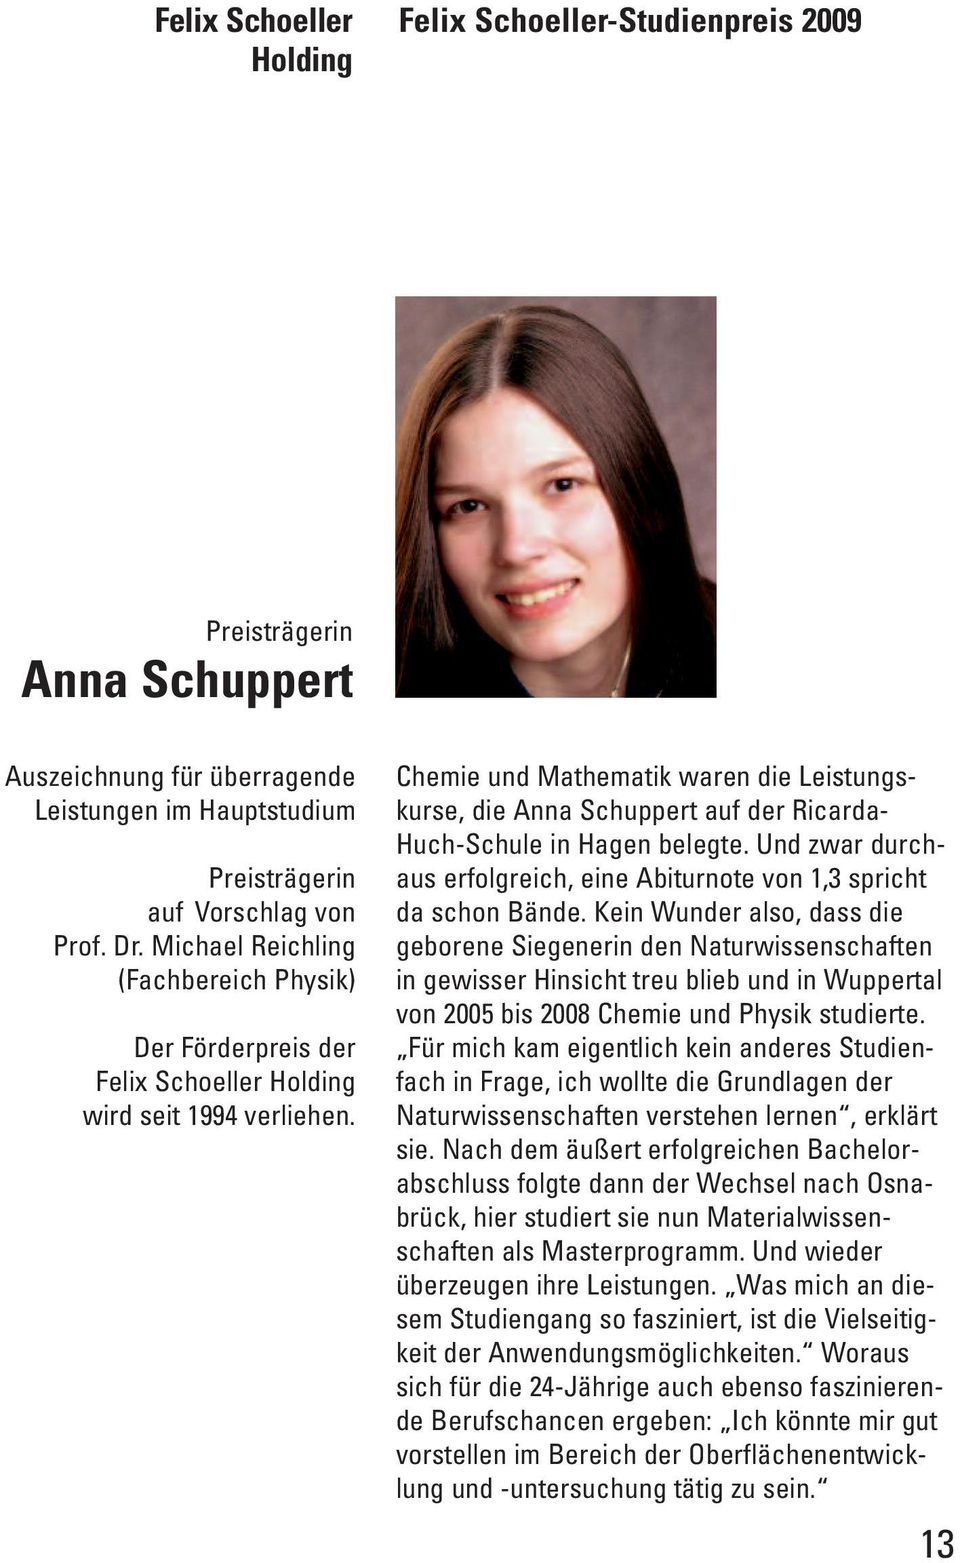 Chemie und Mathematik waren die Leistungs - kurse, die Anna Schuppert auf der Ricarda- Huch-Schule in Hagen belegte. Und zwar durchaus erfolgreich, eine Abiturnote von 1,3 spricht da schon Bände.